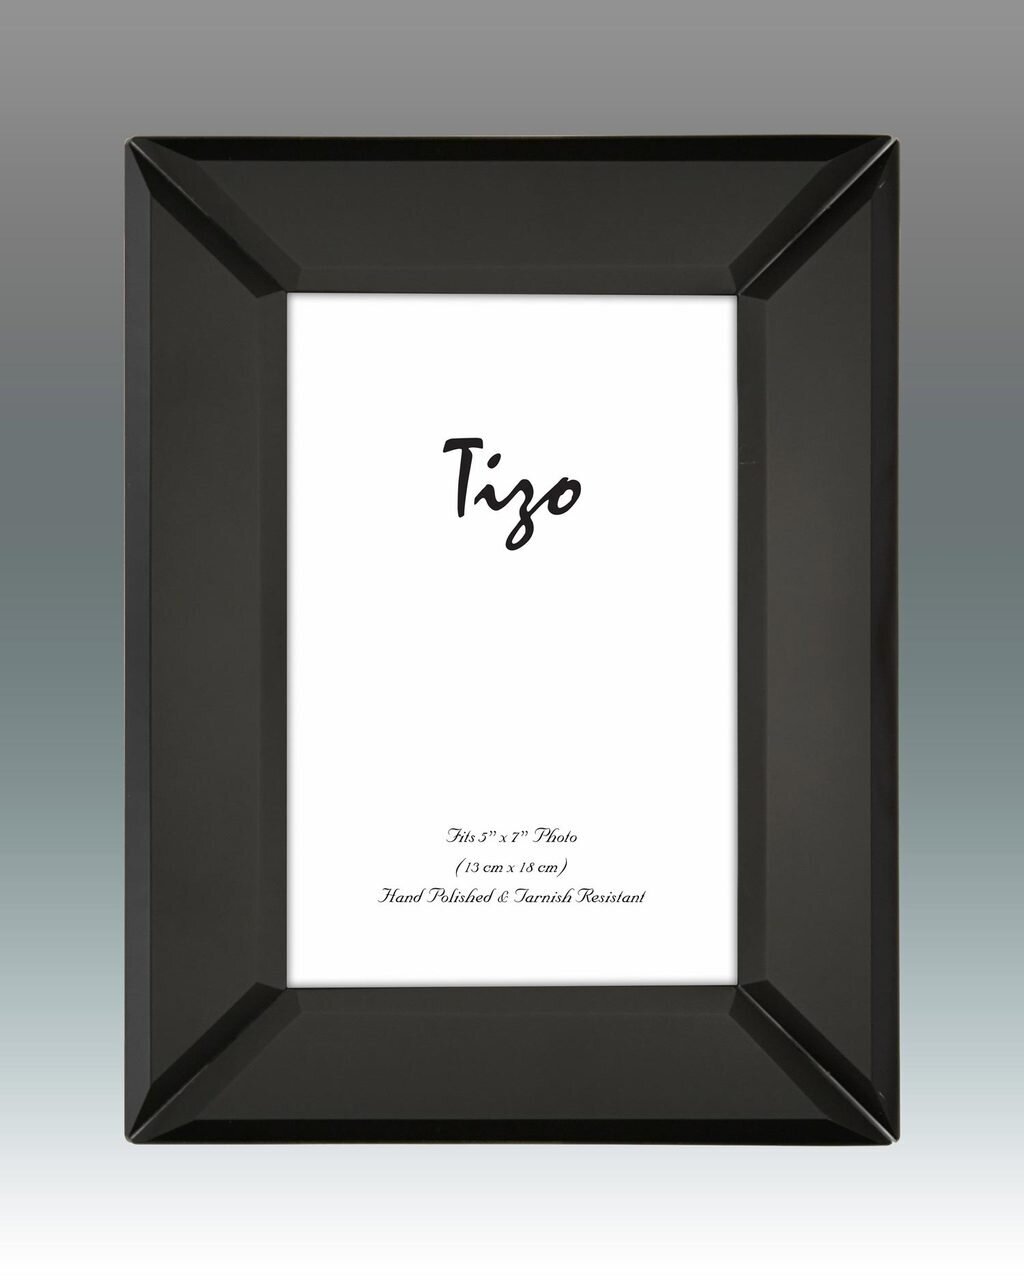 Tizo Black Mirrored Picture Frame 5 x 7 Inch